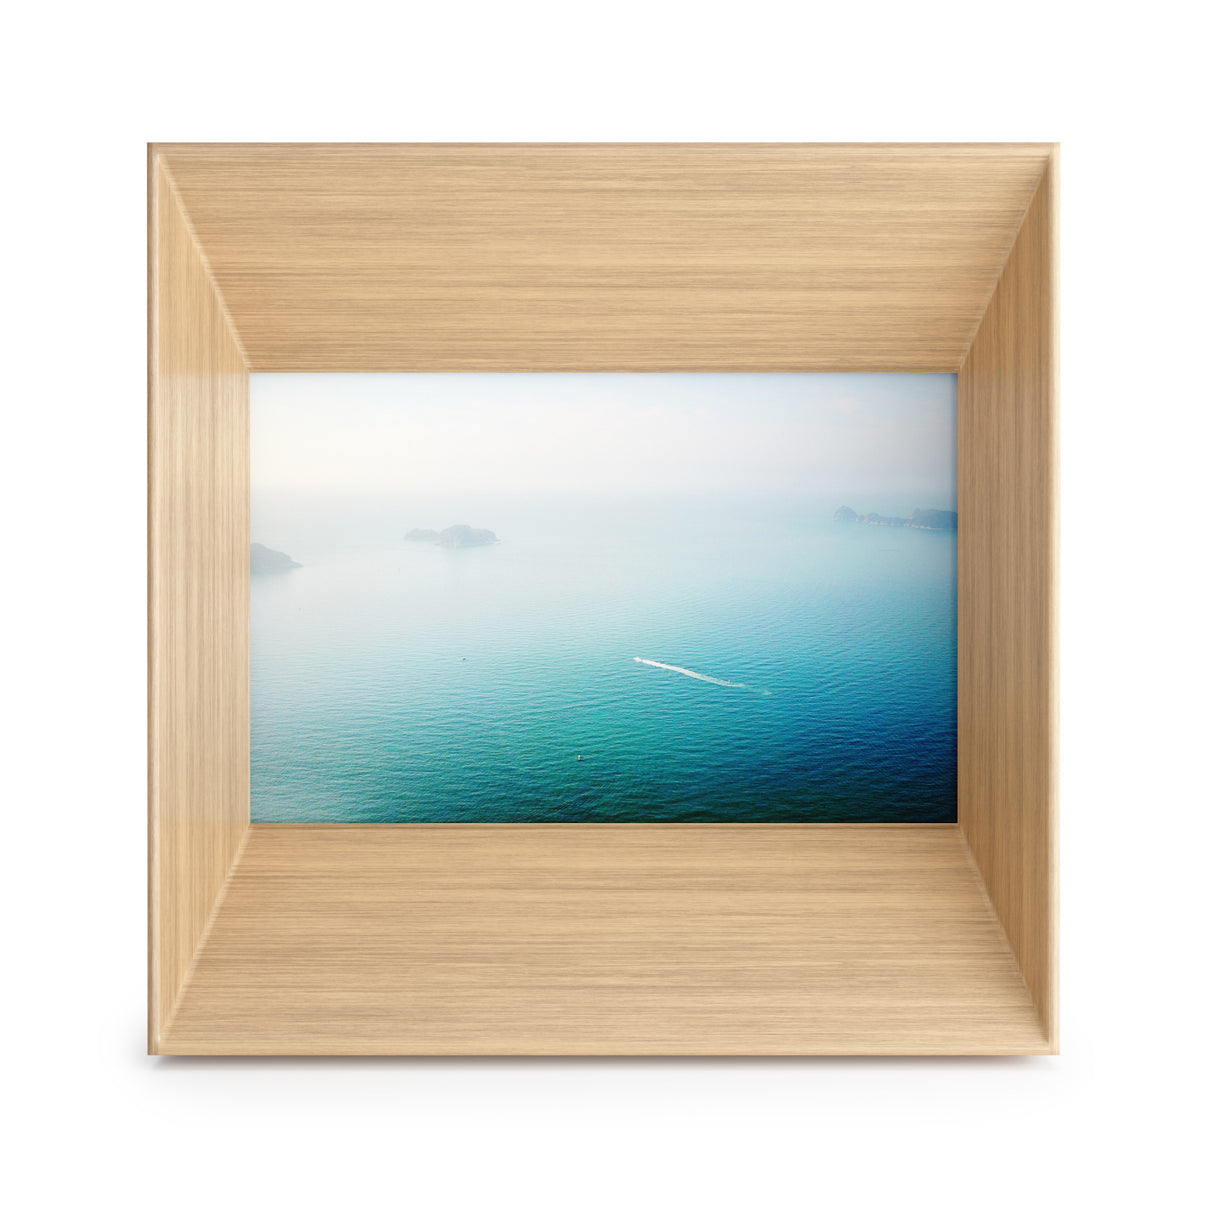 Wooden Tabletop Frames